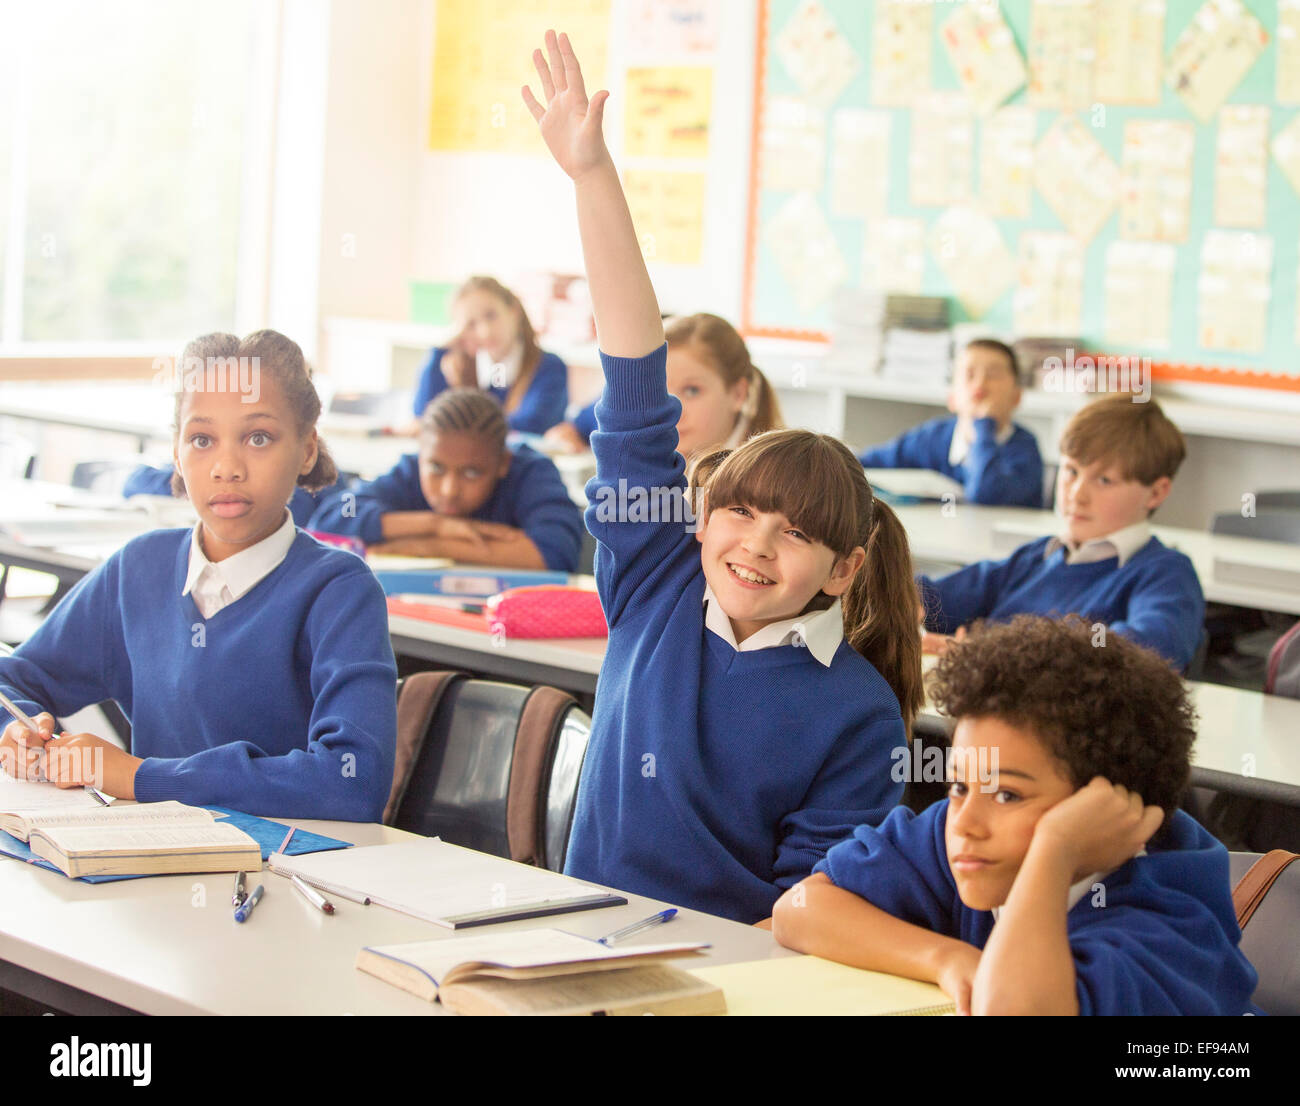 Les enfants de l'école élémentaire en classe pendant la leçon, smiling girl raising hand Banque D'Images